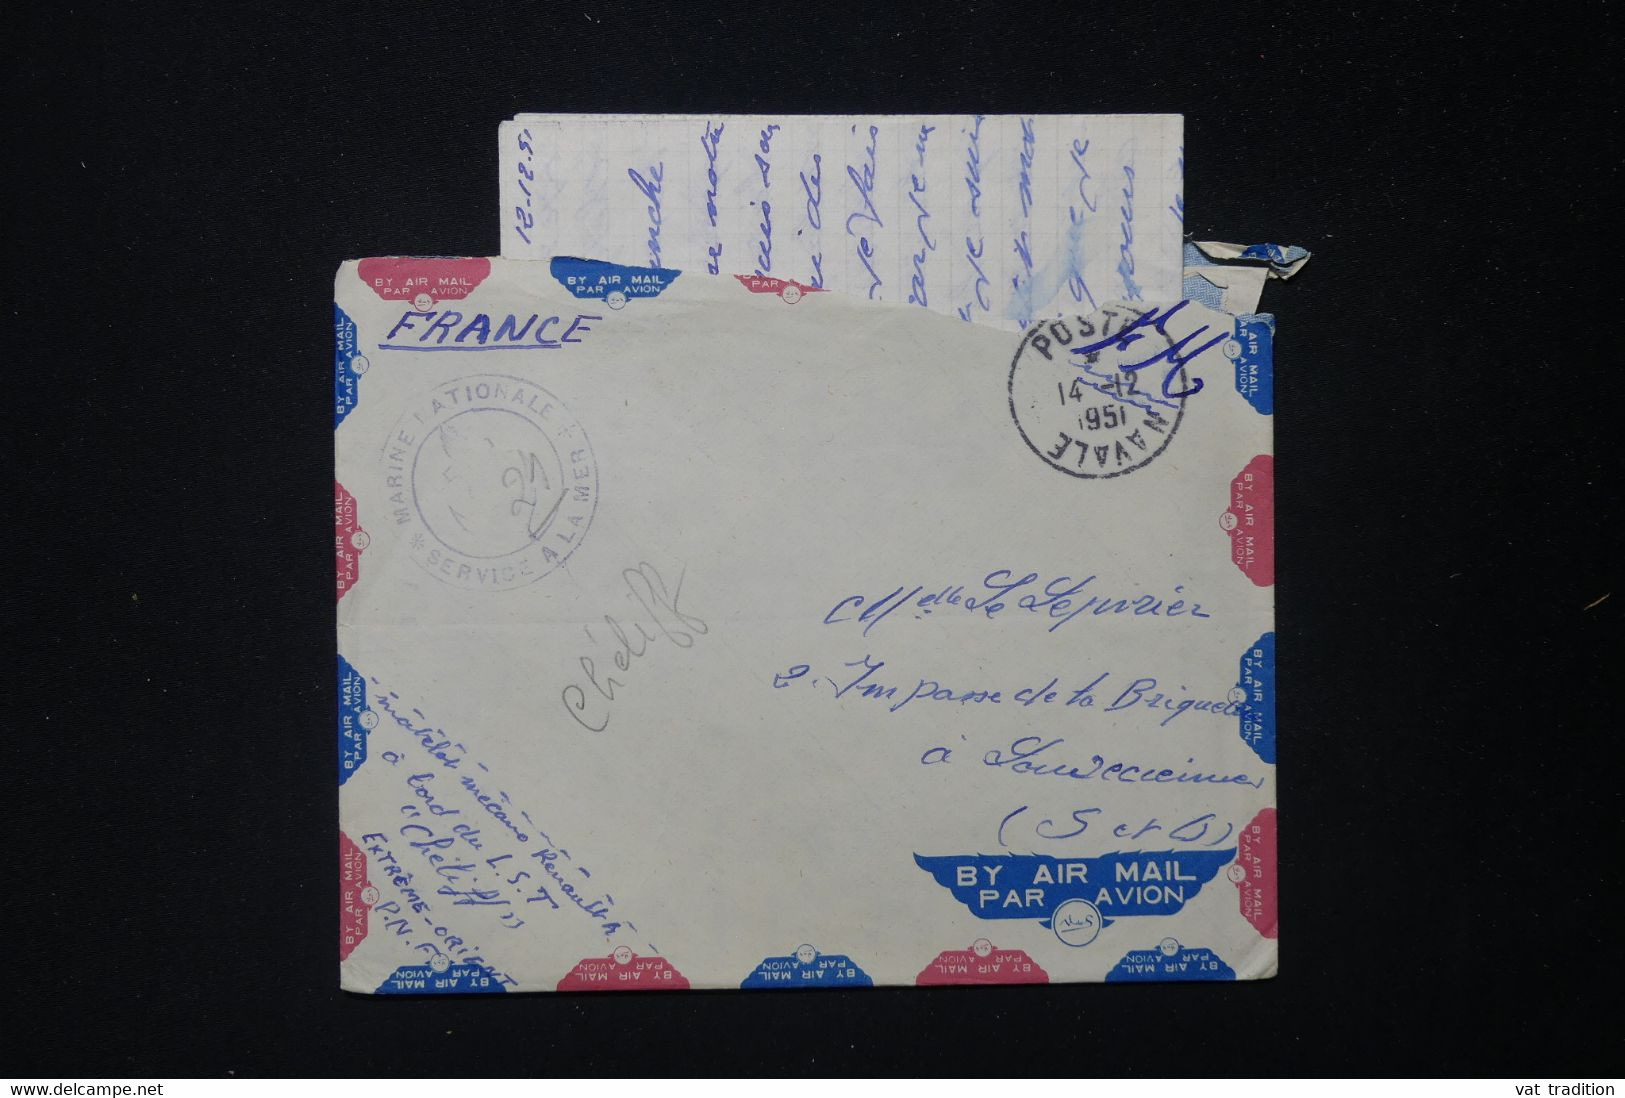 FRANCE - Enveloppe Avec Contenu D'un Marin En Indochine Pour La France En 1951 - L 83869 - Guerre D'Indochine / Viêt-Nam